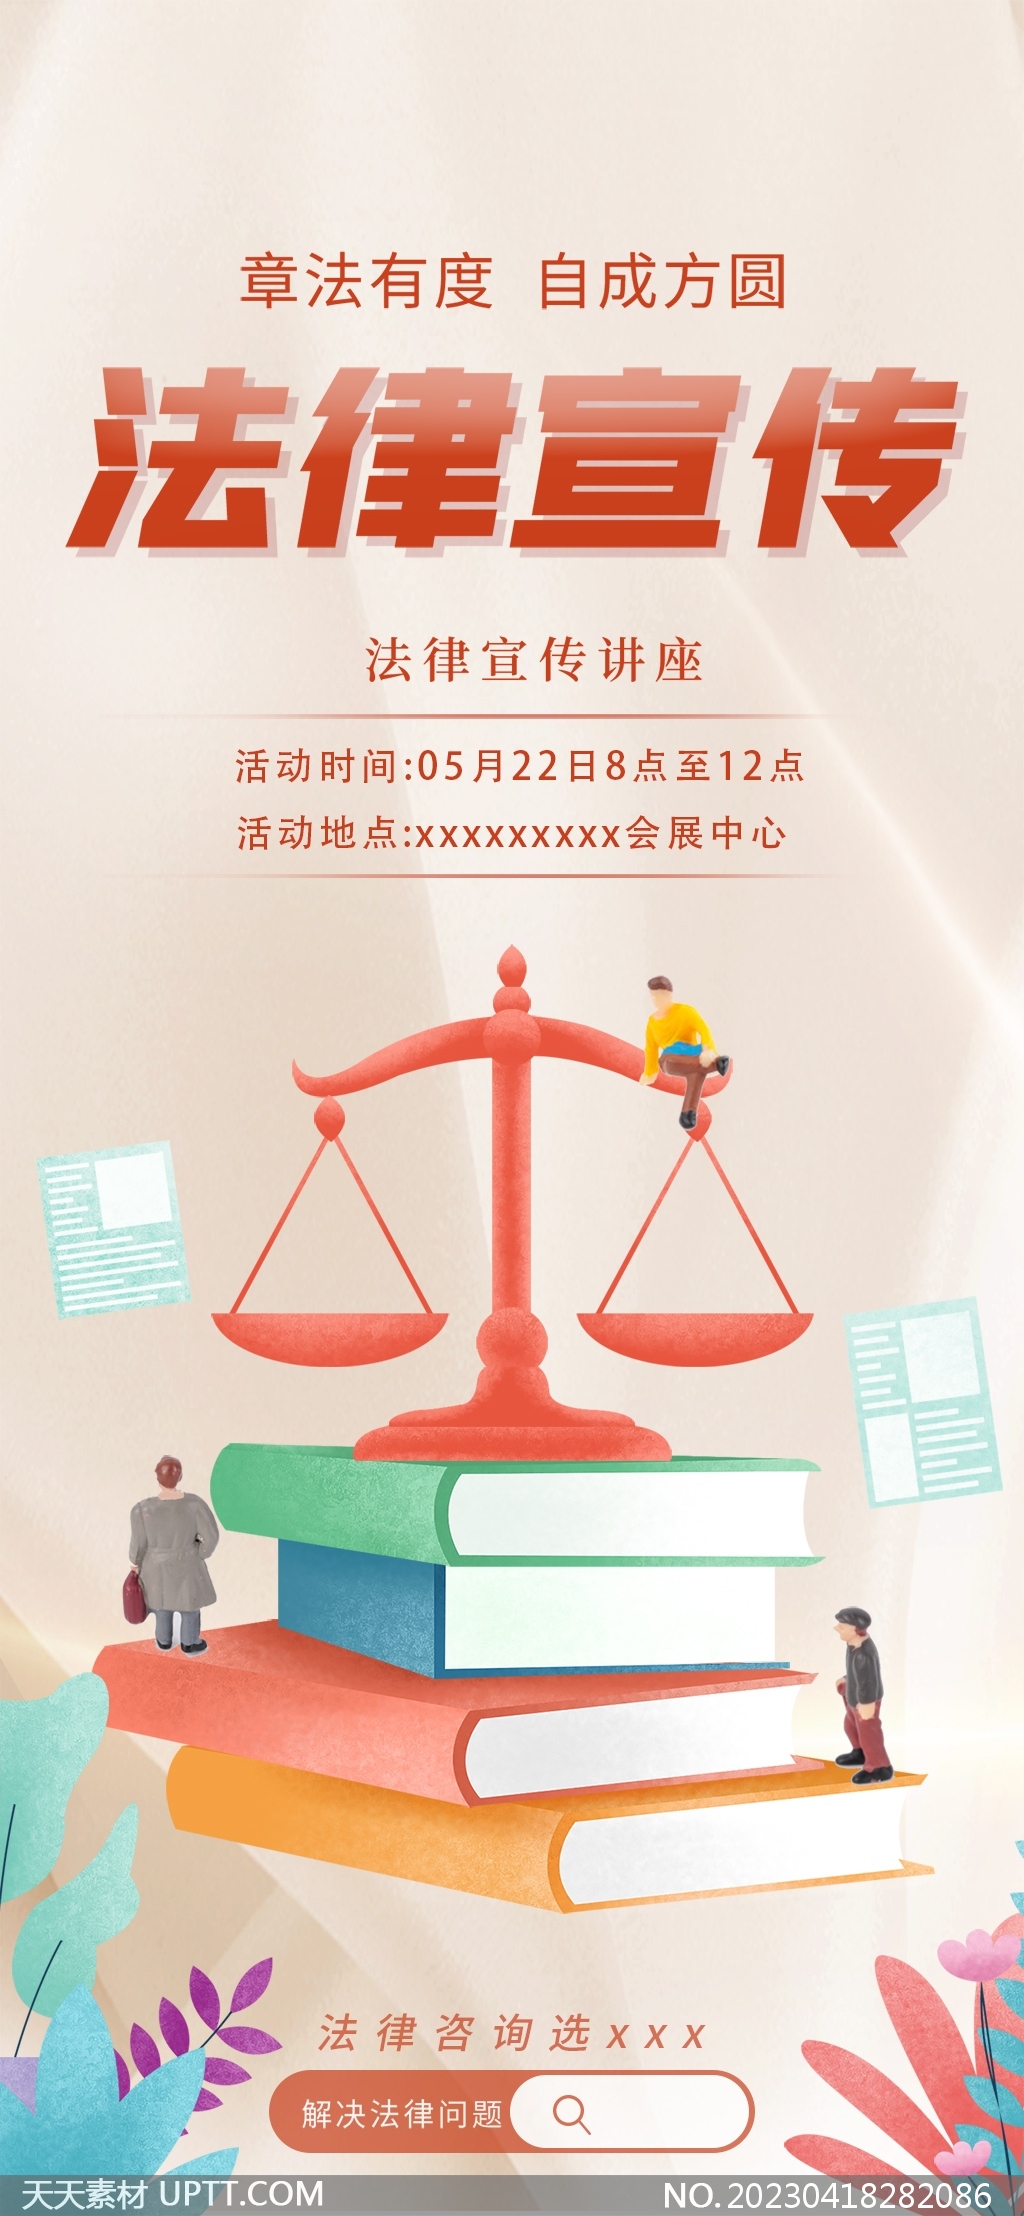 律师事务所法律宣传讲座手机海报